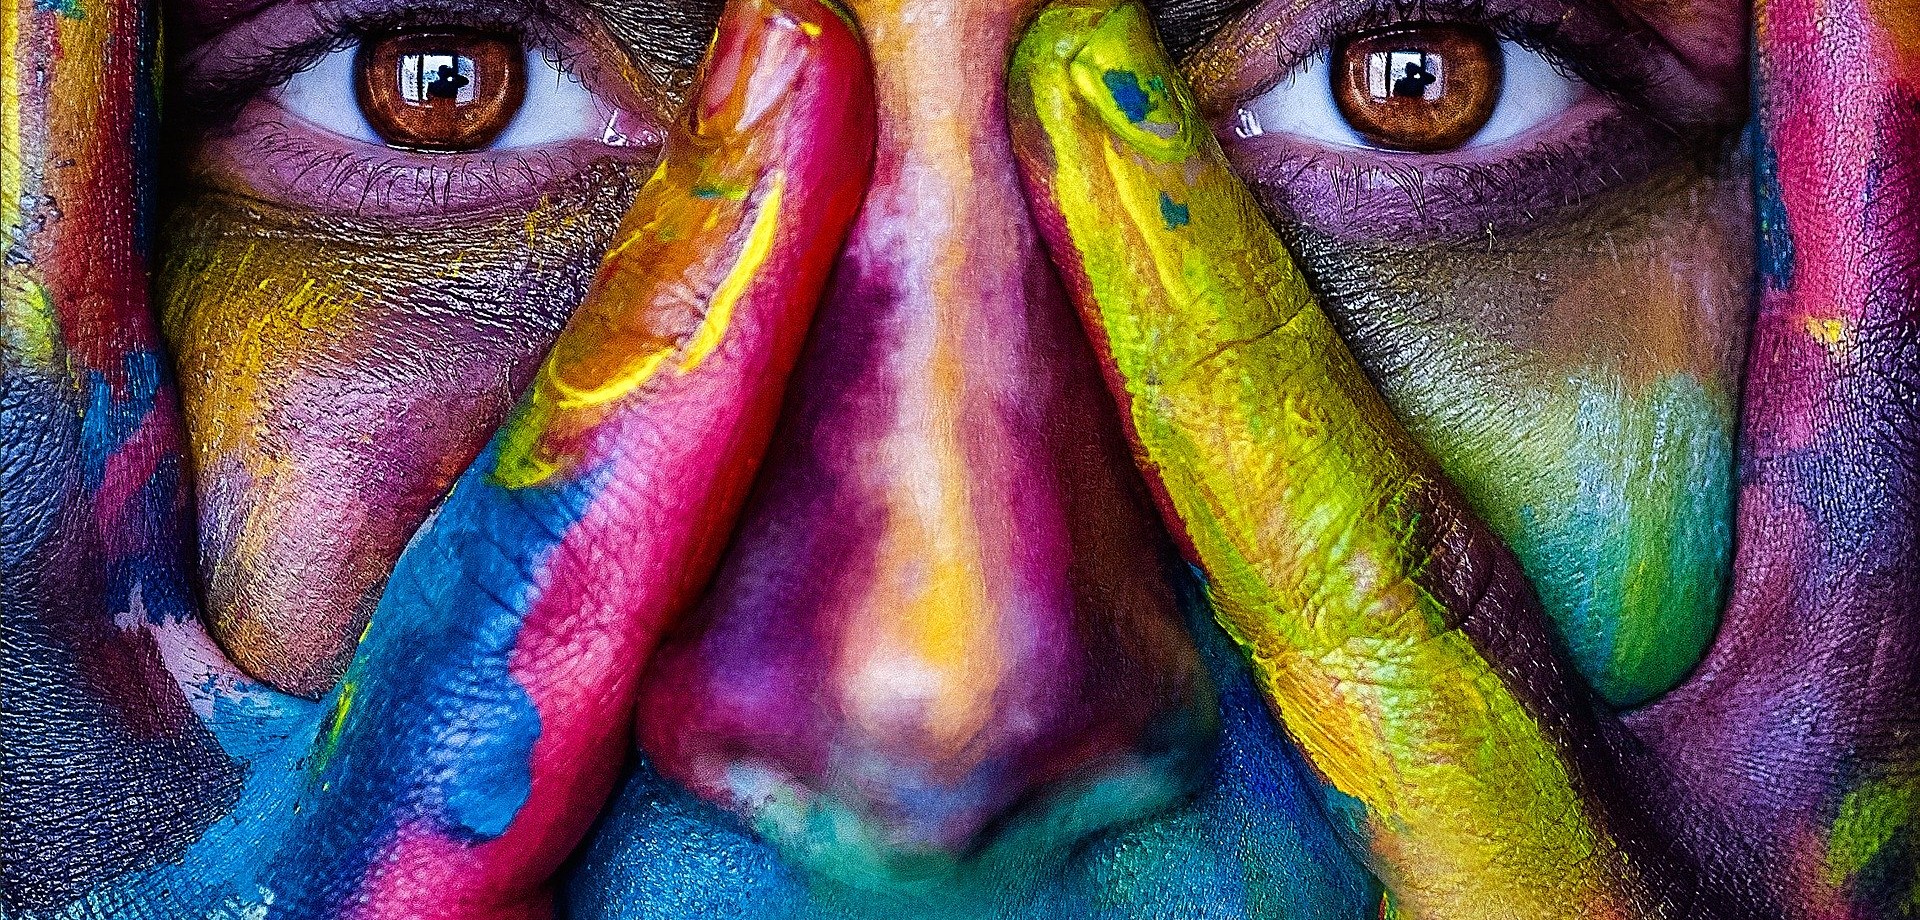 In Großaufnahme das Gesicht einer Frau, deren Gesicht und Hände kunterbunt in leuchtenden Farben angemalt sind